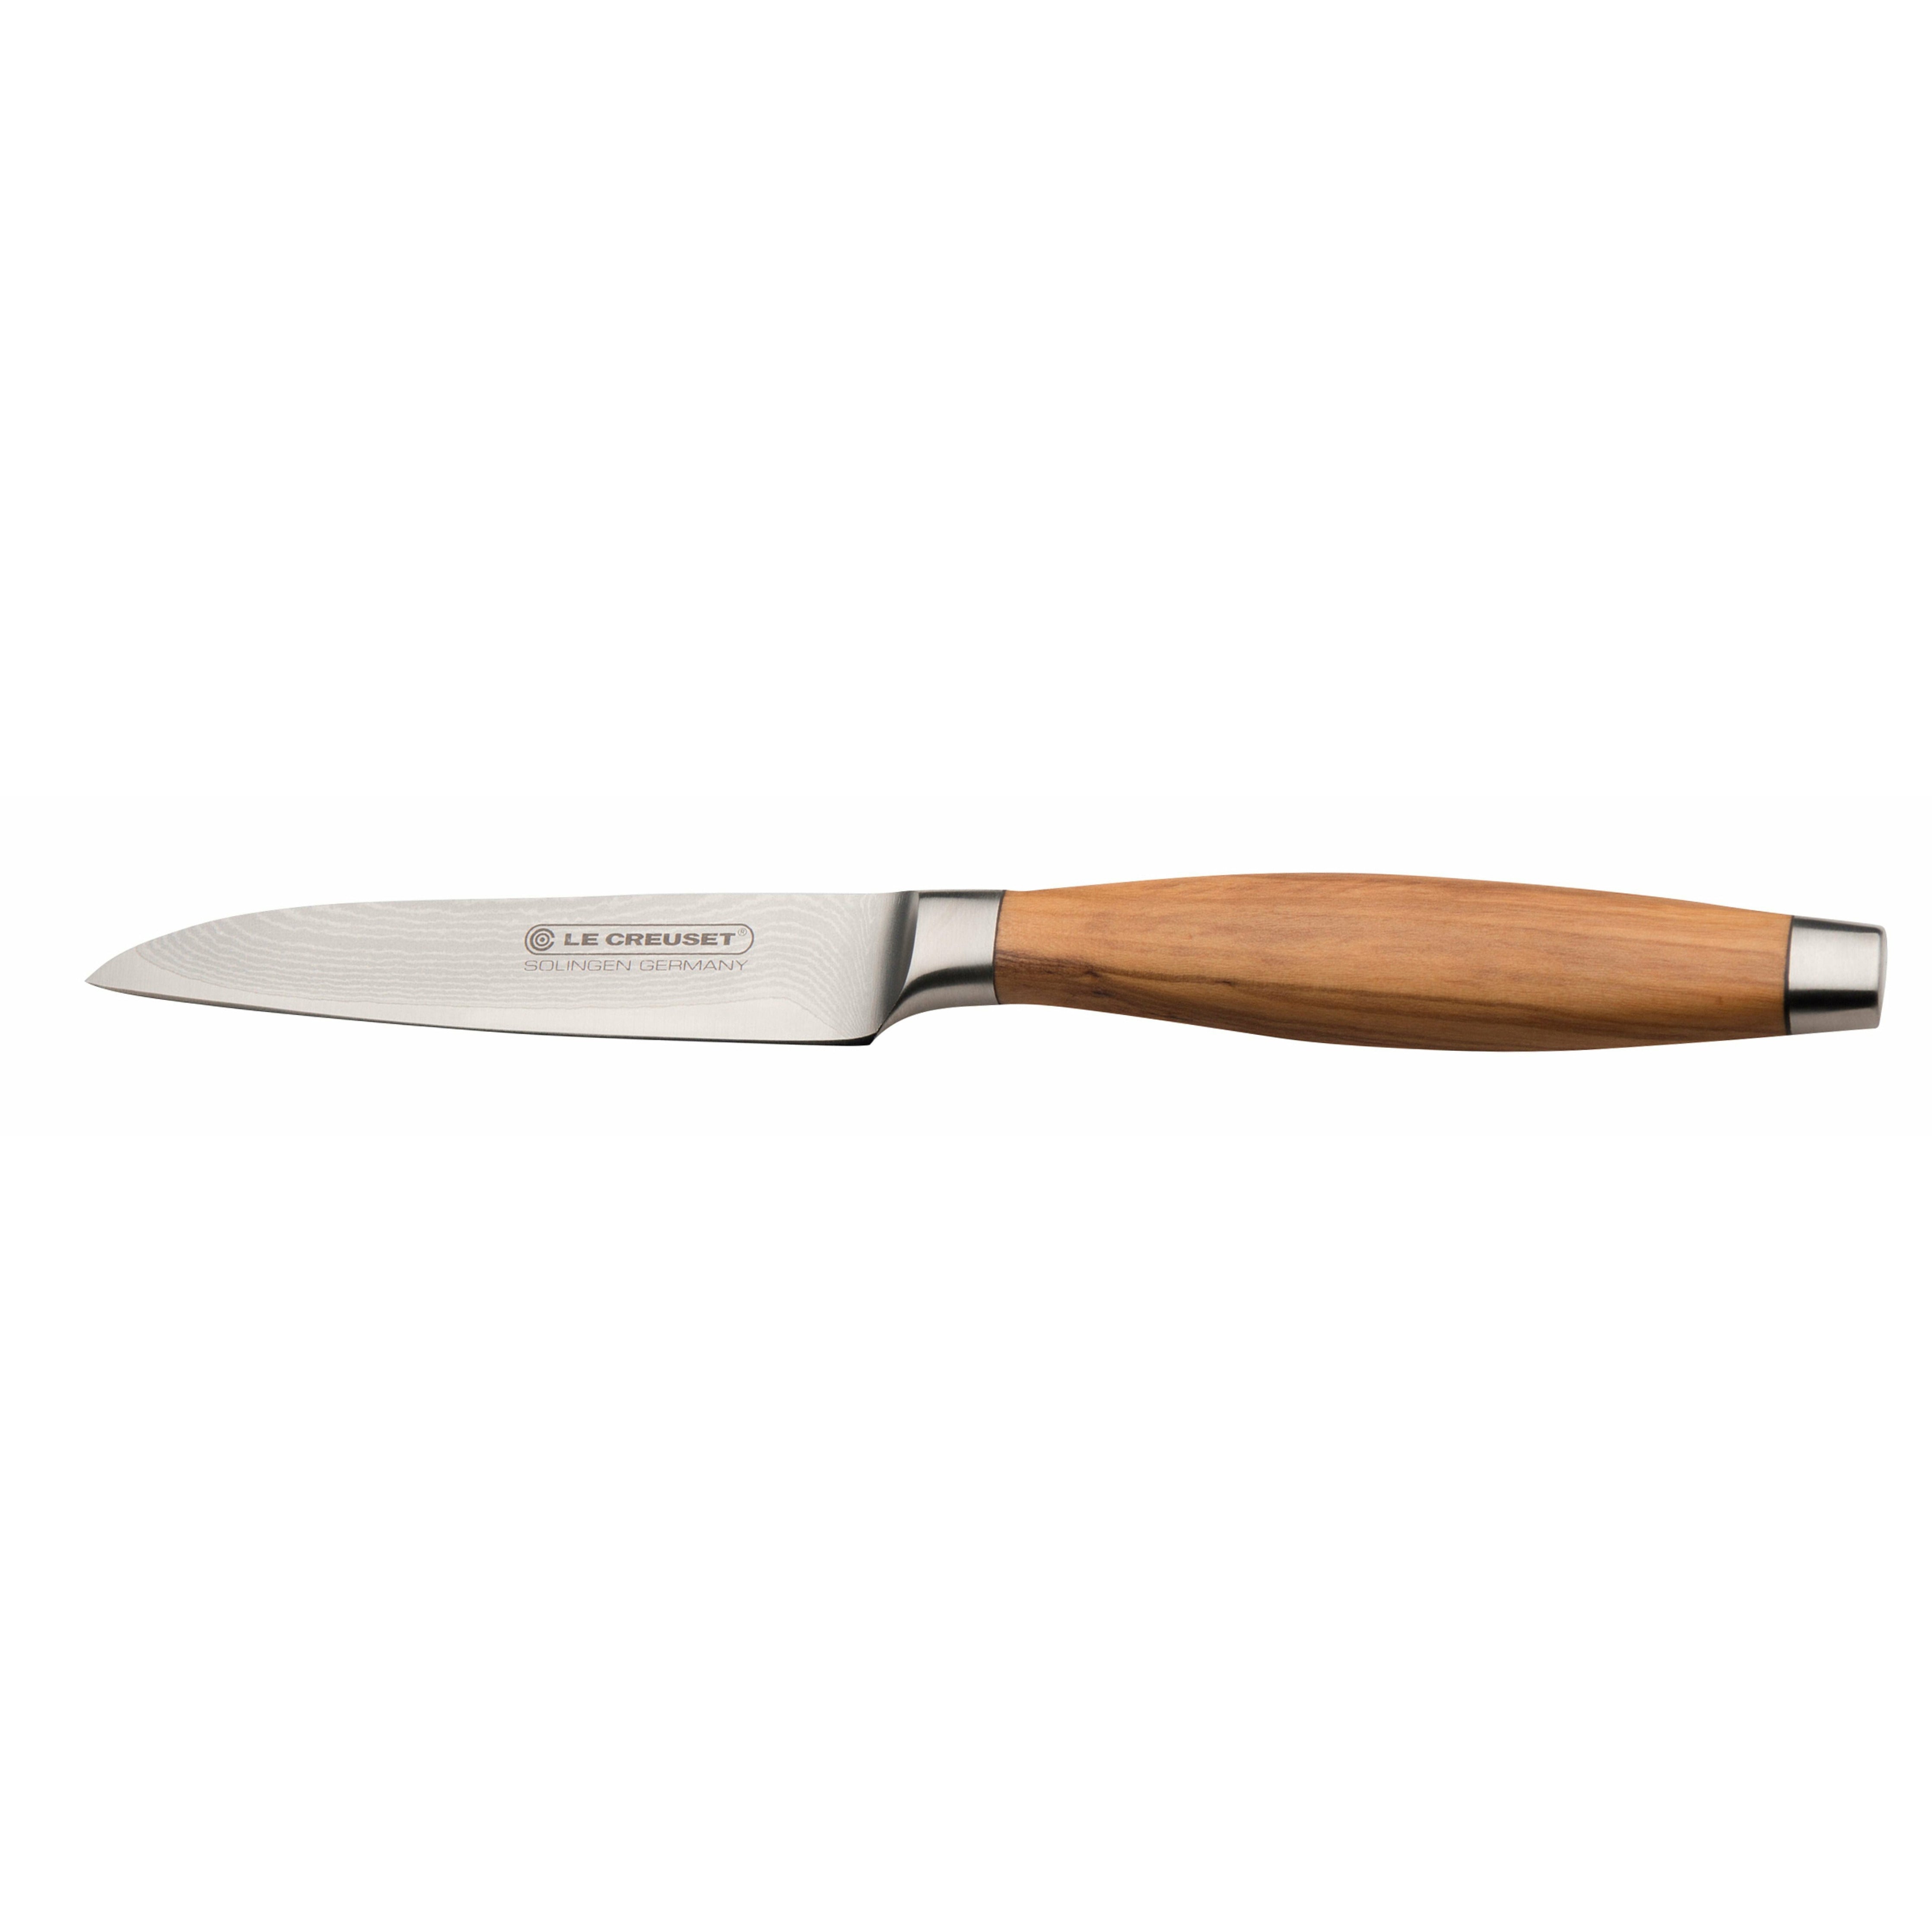 Le Creuset Vegetabilisk kniv oliv trähandtag, 9 cm